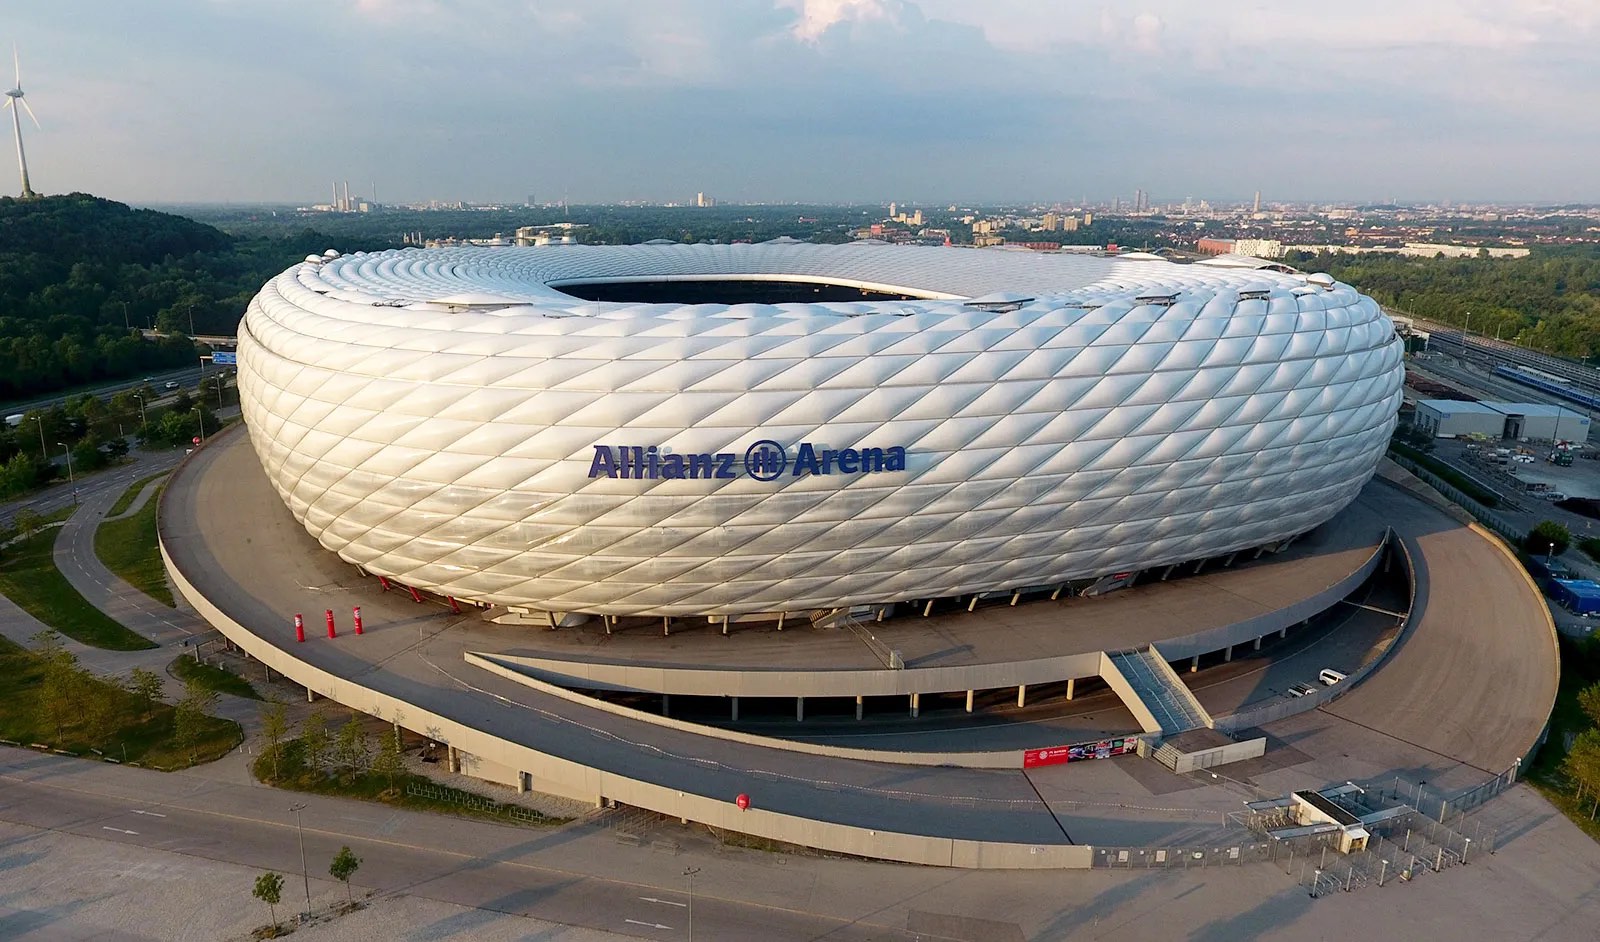 lich su svd Allianz Arena 03 jpg